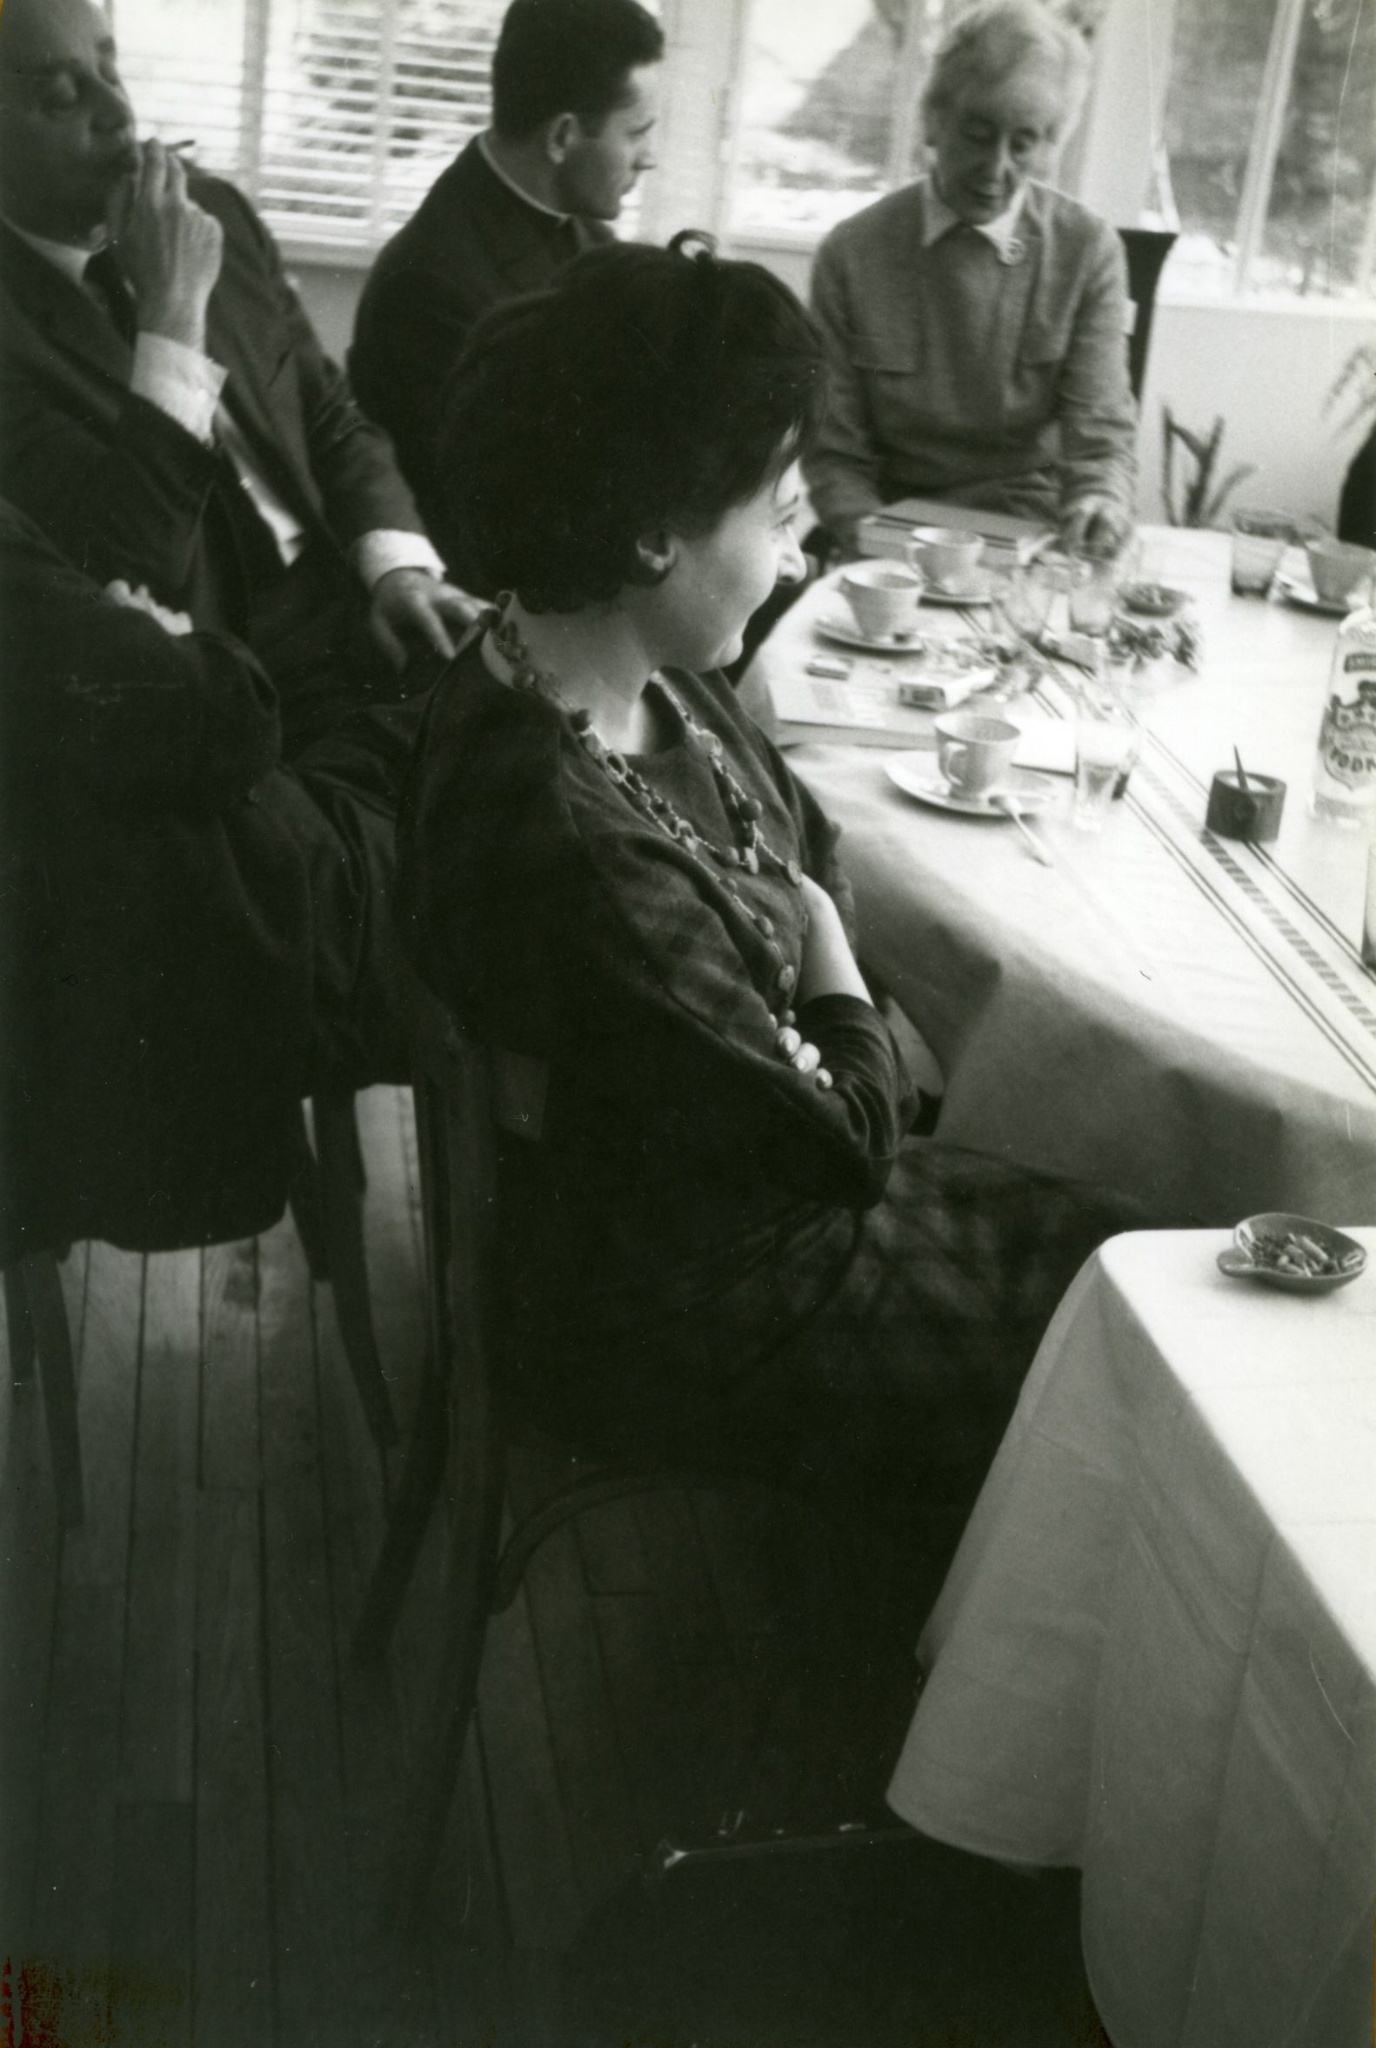  Пасха в 1963 году в Доме культуры. За столом сидят: Георгий Гедройц, ксендз Юзеф Садзик, Мария Гуттен-Чапская. fot: Henryk Giedroyc 